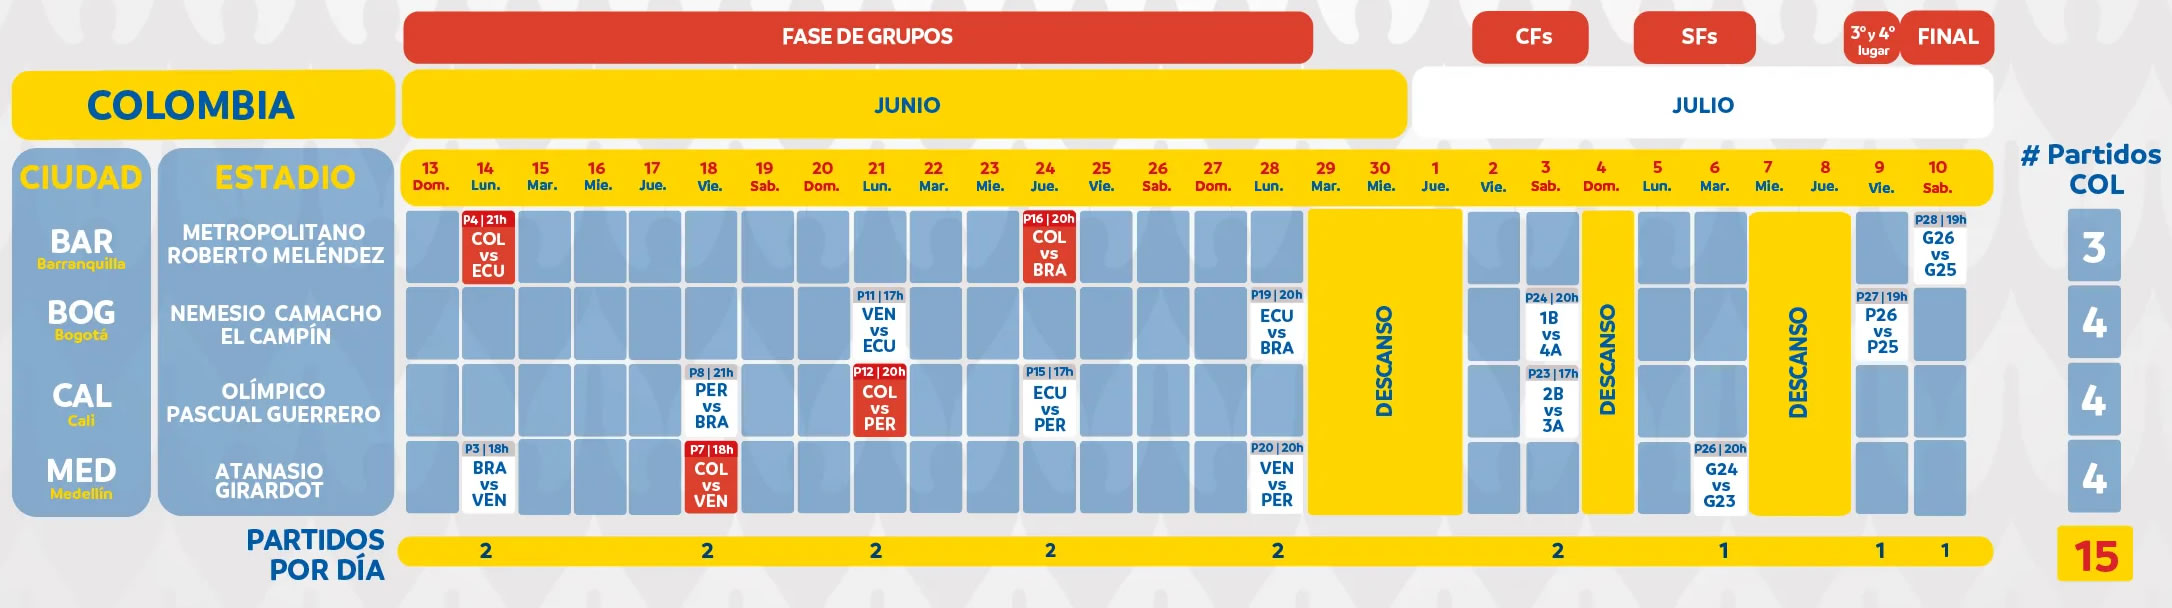 Calendario Copa America Colombia